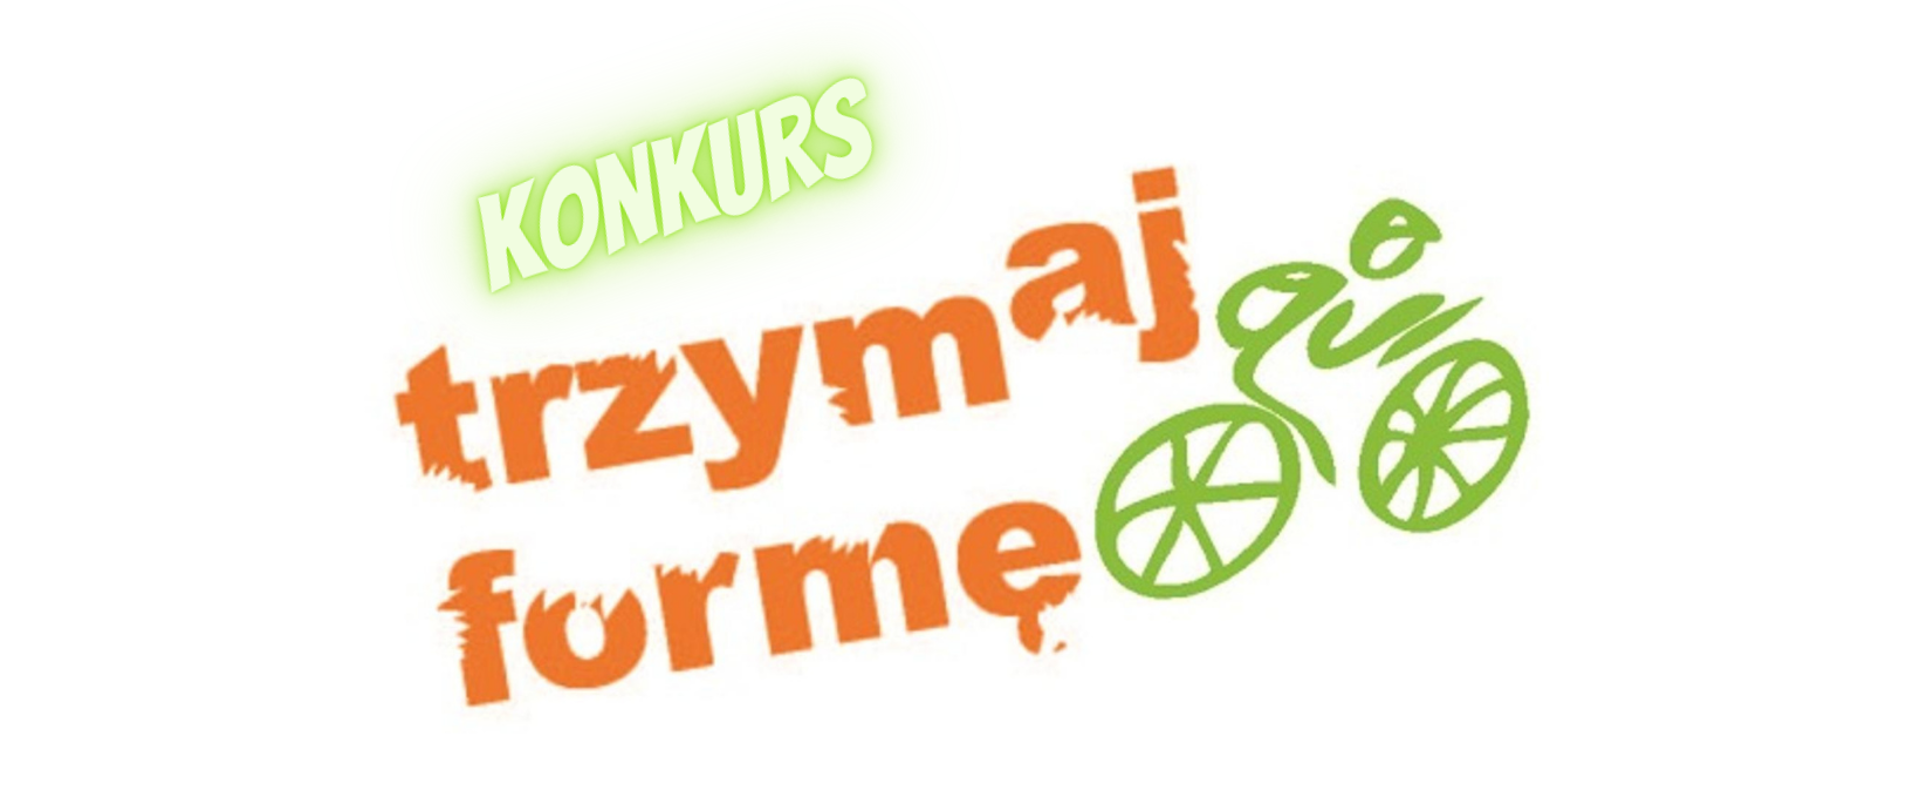 Na grafice widać neonowy napis „Konkurs”. Pod nim jest pomarańczowy napis „Trzymaj formę” i logo przedstawiające osobę na rowerze. 